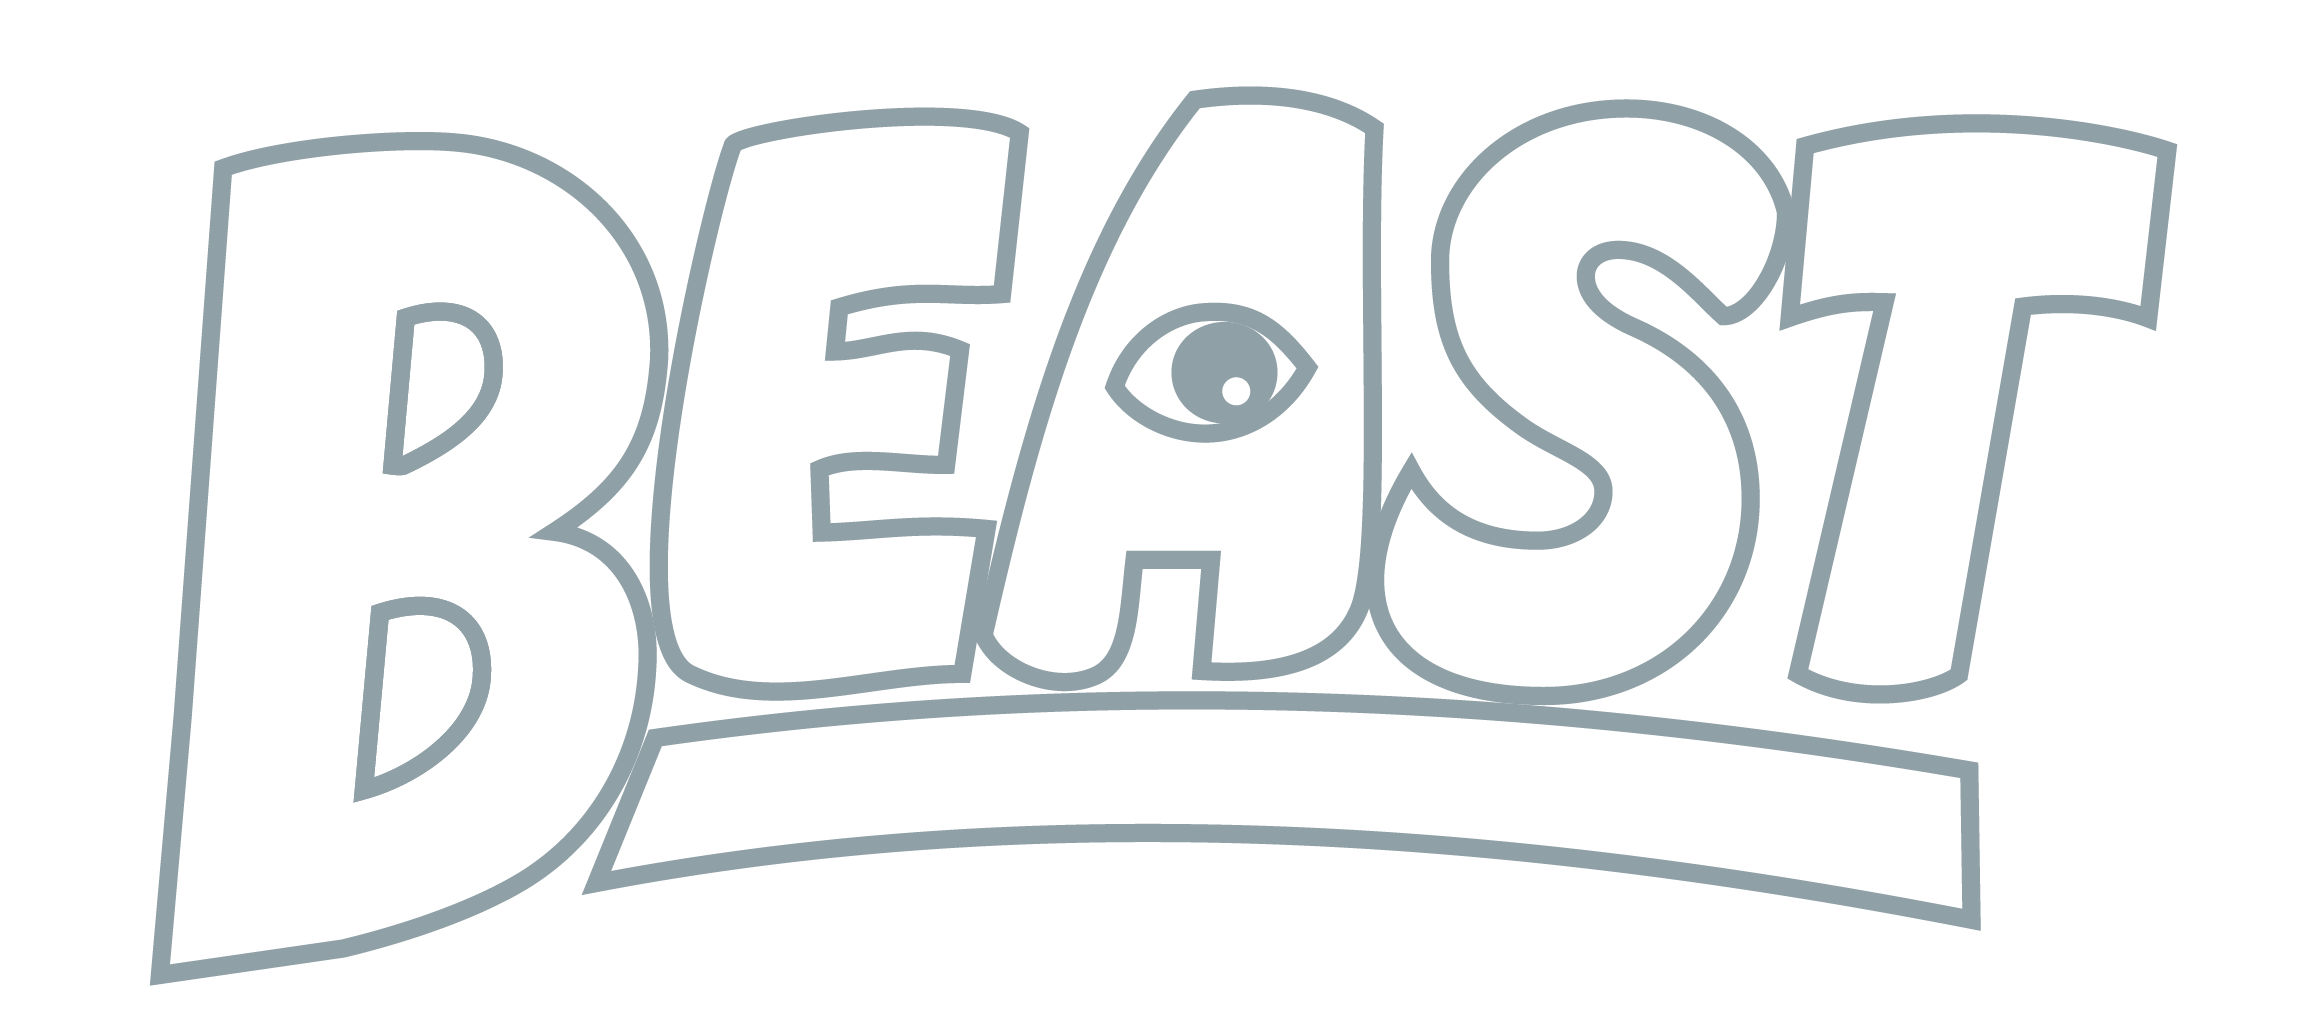 BEAST_Logo_DuskyBlue-3.png